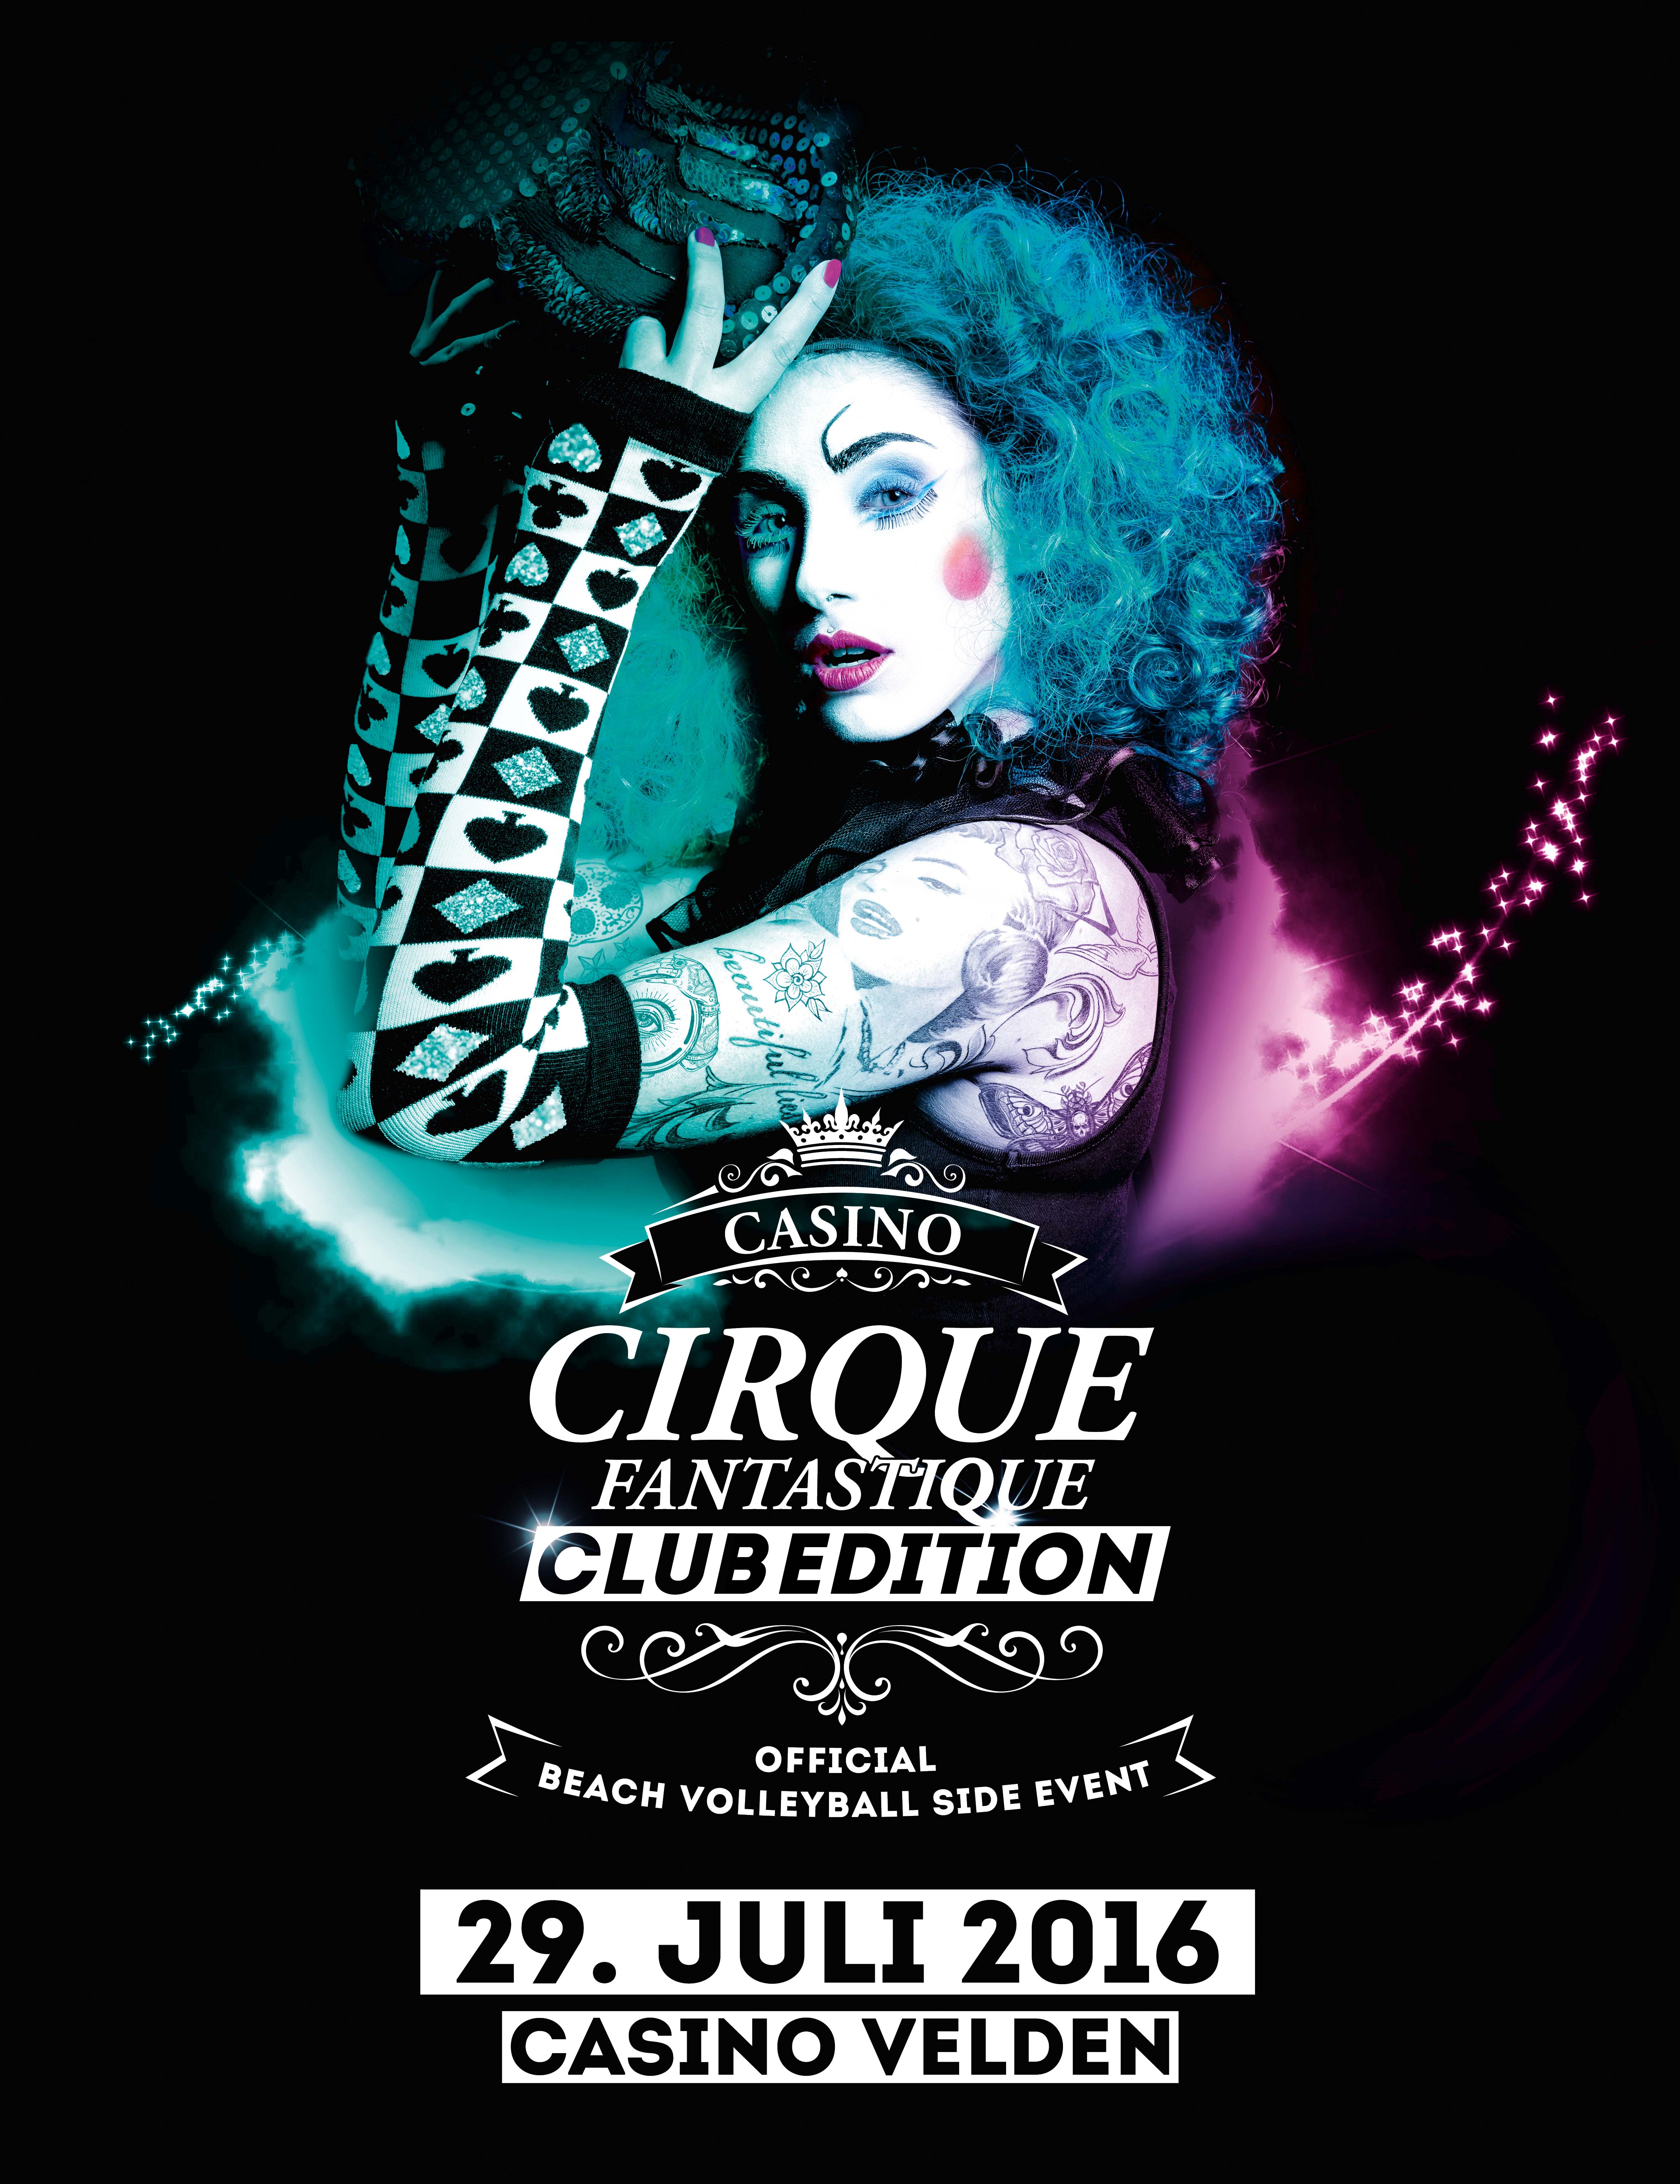 Cirque Fantastique11111_Club Edition-Hauptsujet